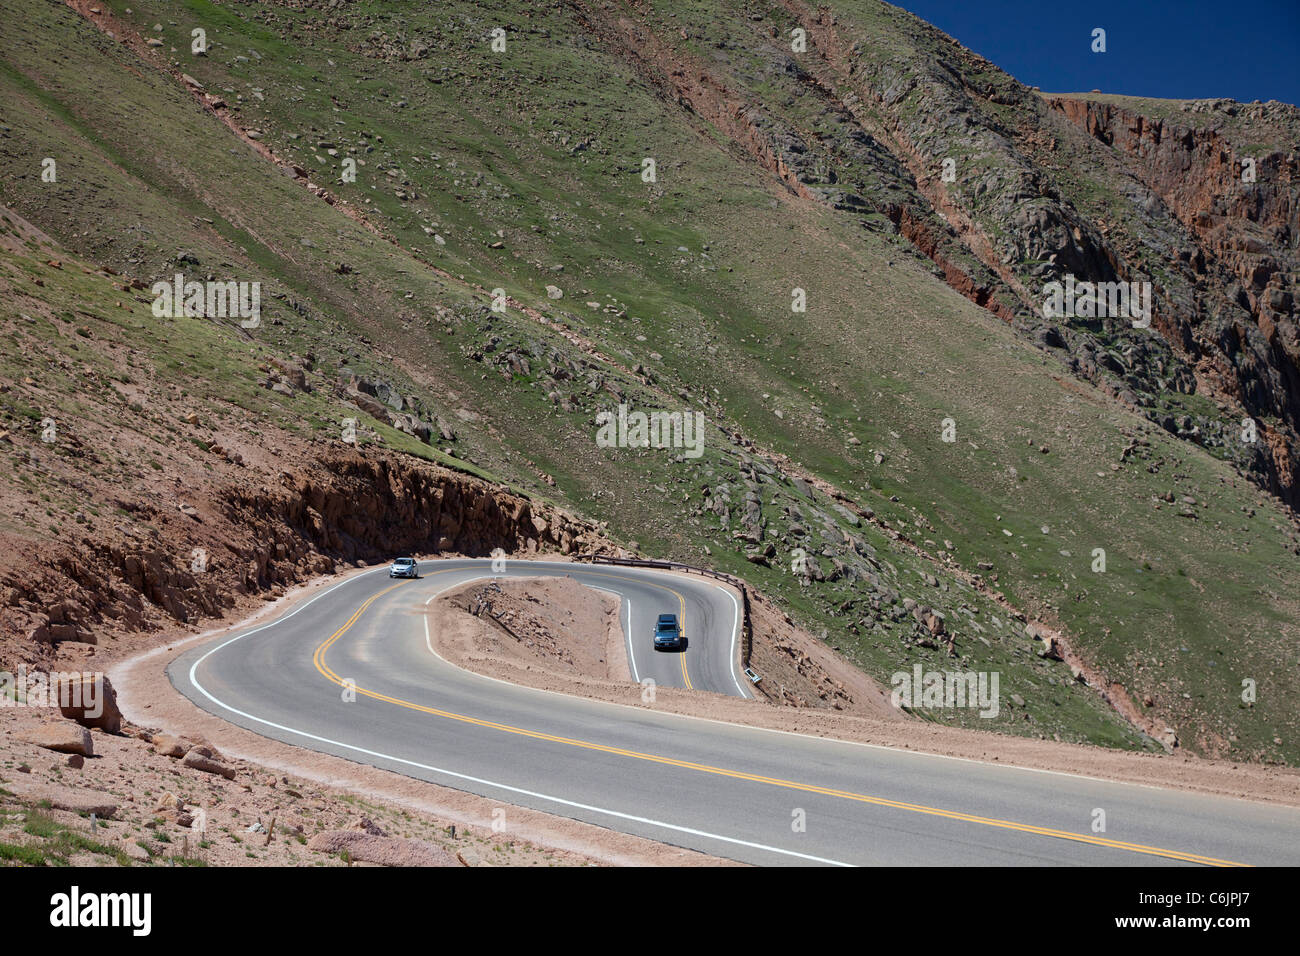 Colorado Springs, Colorado - vetture sul Pikes Peak autostrada, una strada a pedaggio che conduce alla sommità del 14,110 piedi di montagna. Foto Stock